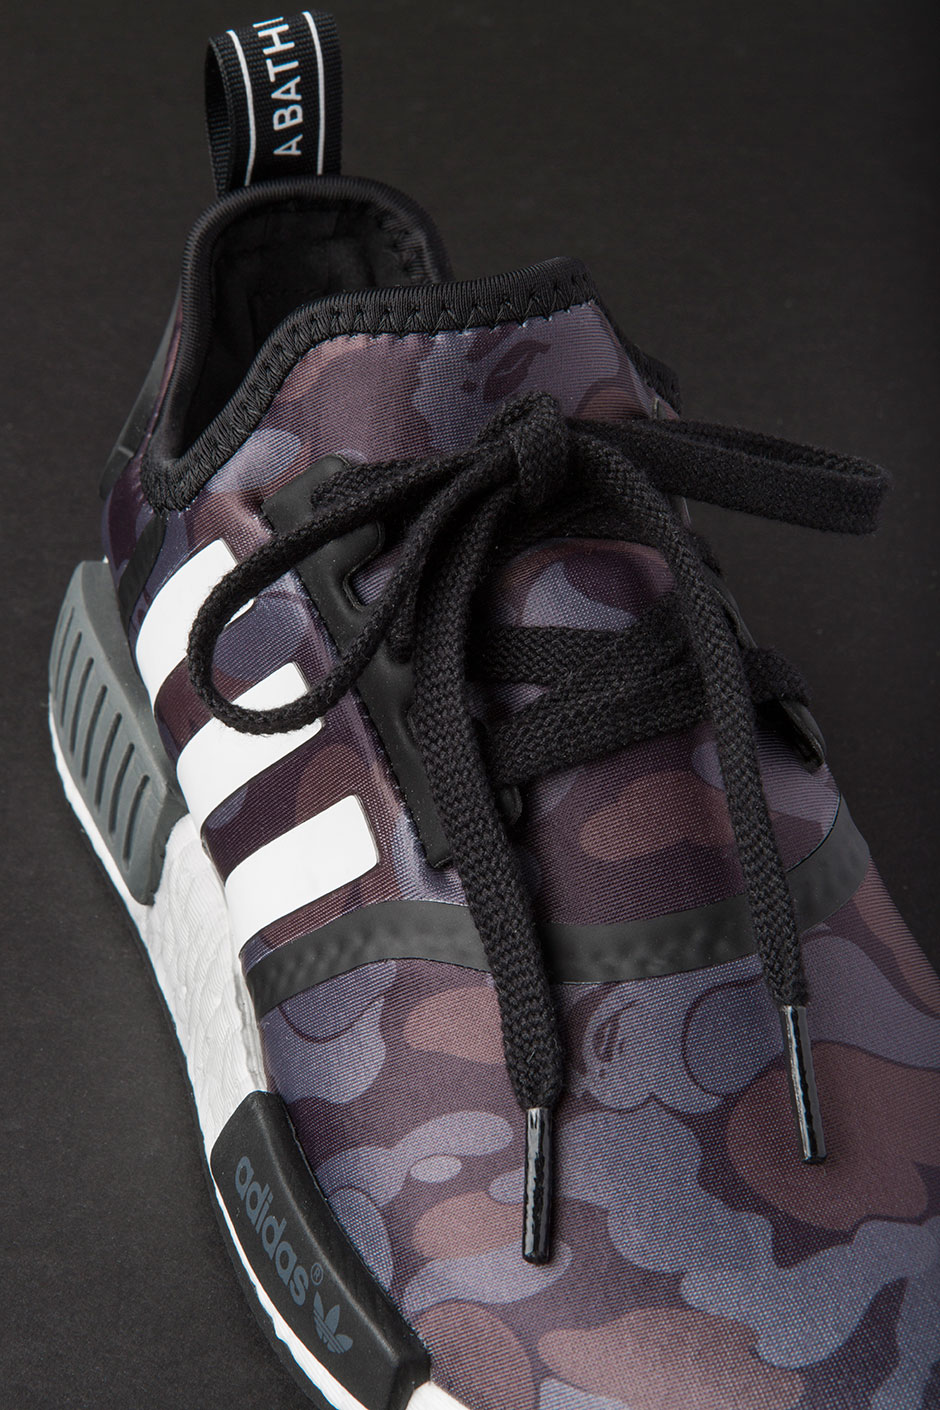 BAPE adidas NMD Release Info + Detailed Photos | SneakerNews.com